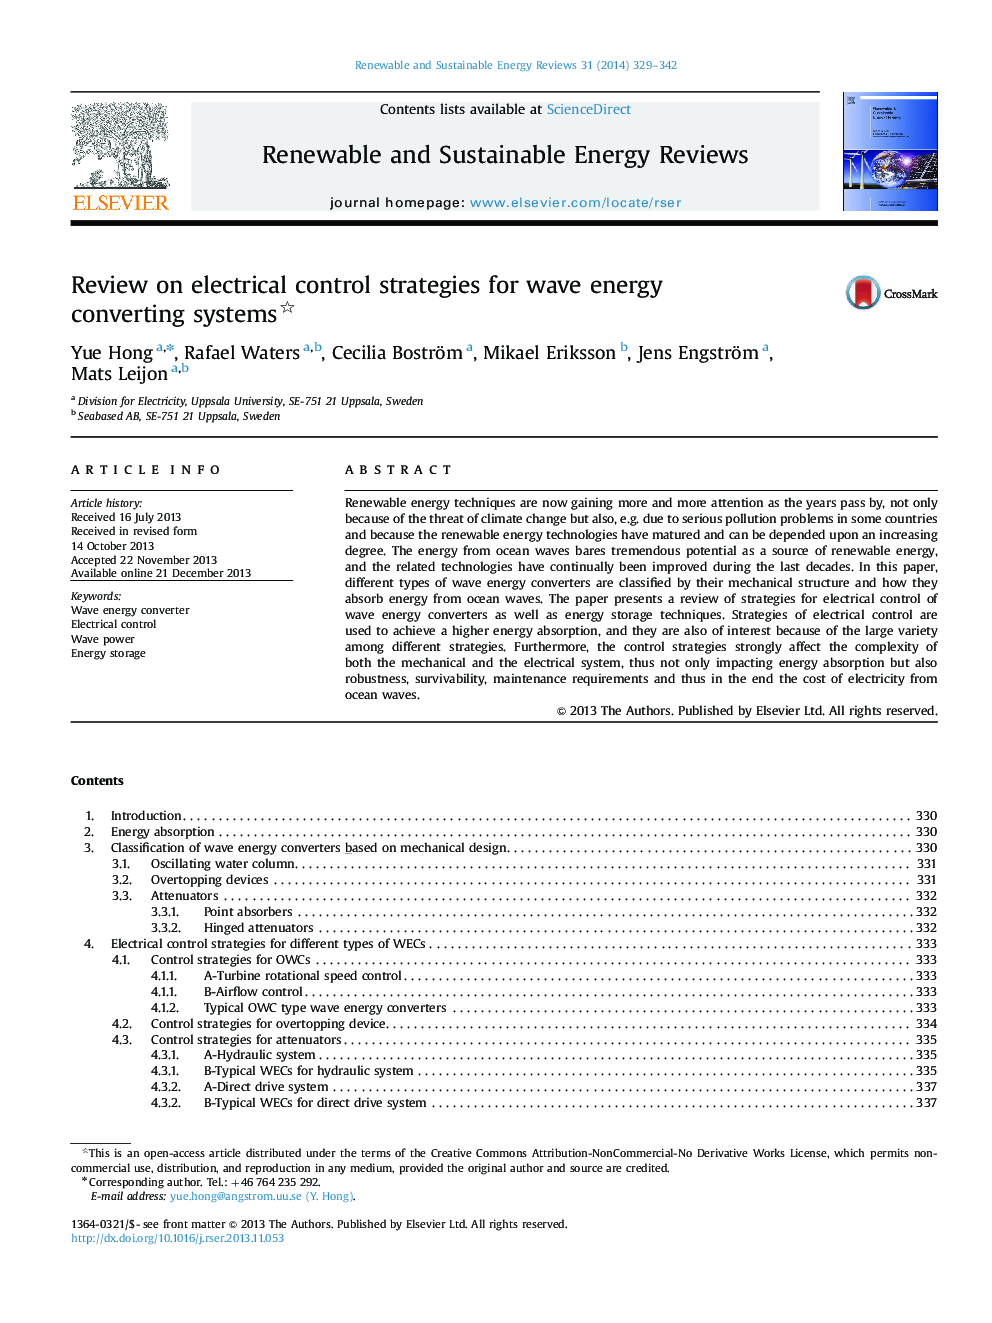 بررسی استراتژی کنترل الکتریکی برای سیستم های تبدیل انرژی موج 